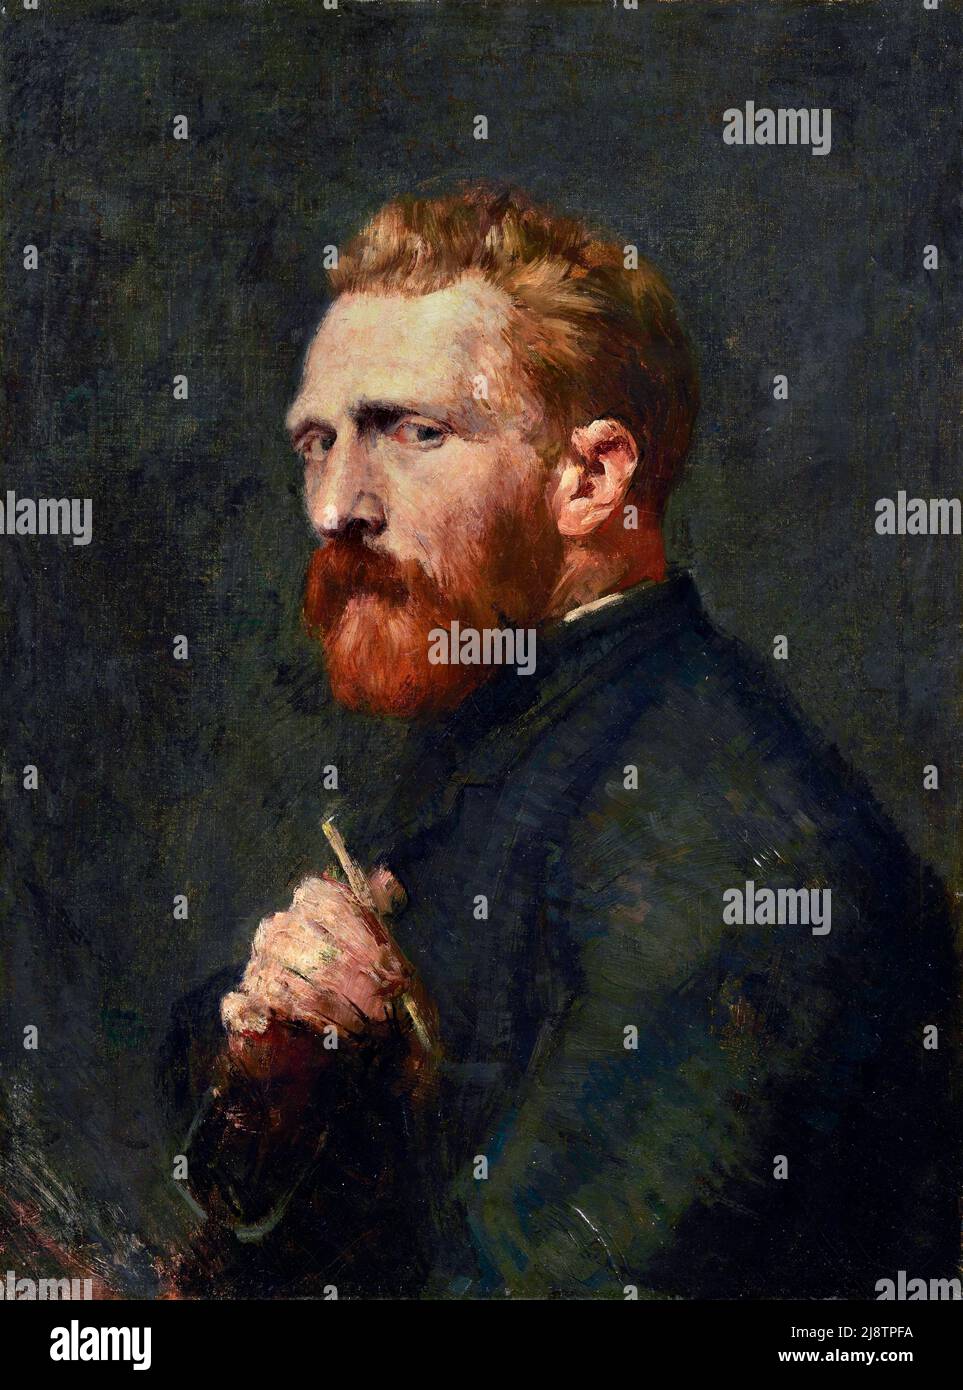 Portrait de Vincent Van Gogh par le peintre impressionniste australien John Russell (1858-1930), huile sur toile, 1886 Banque D'Images